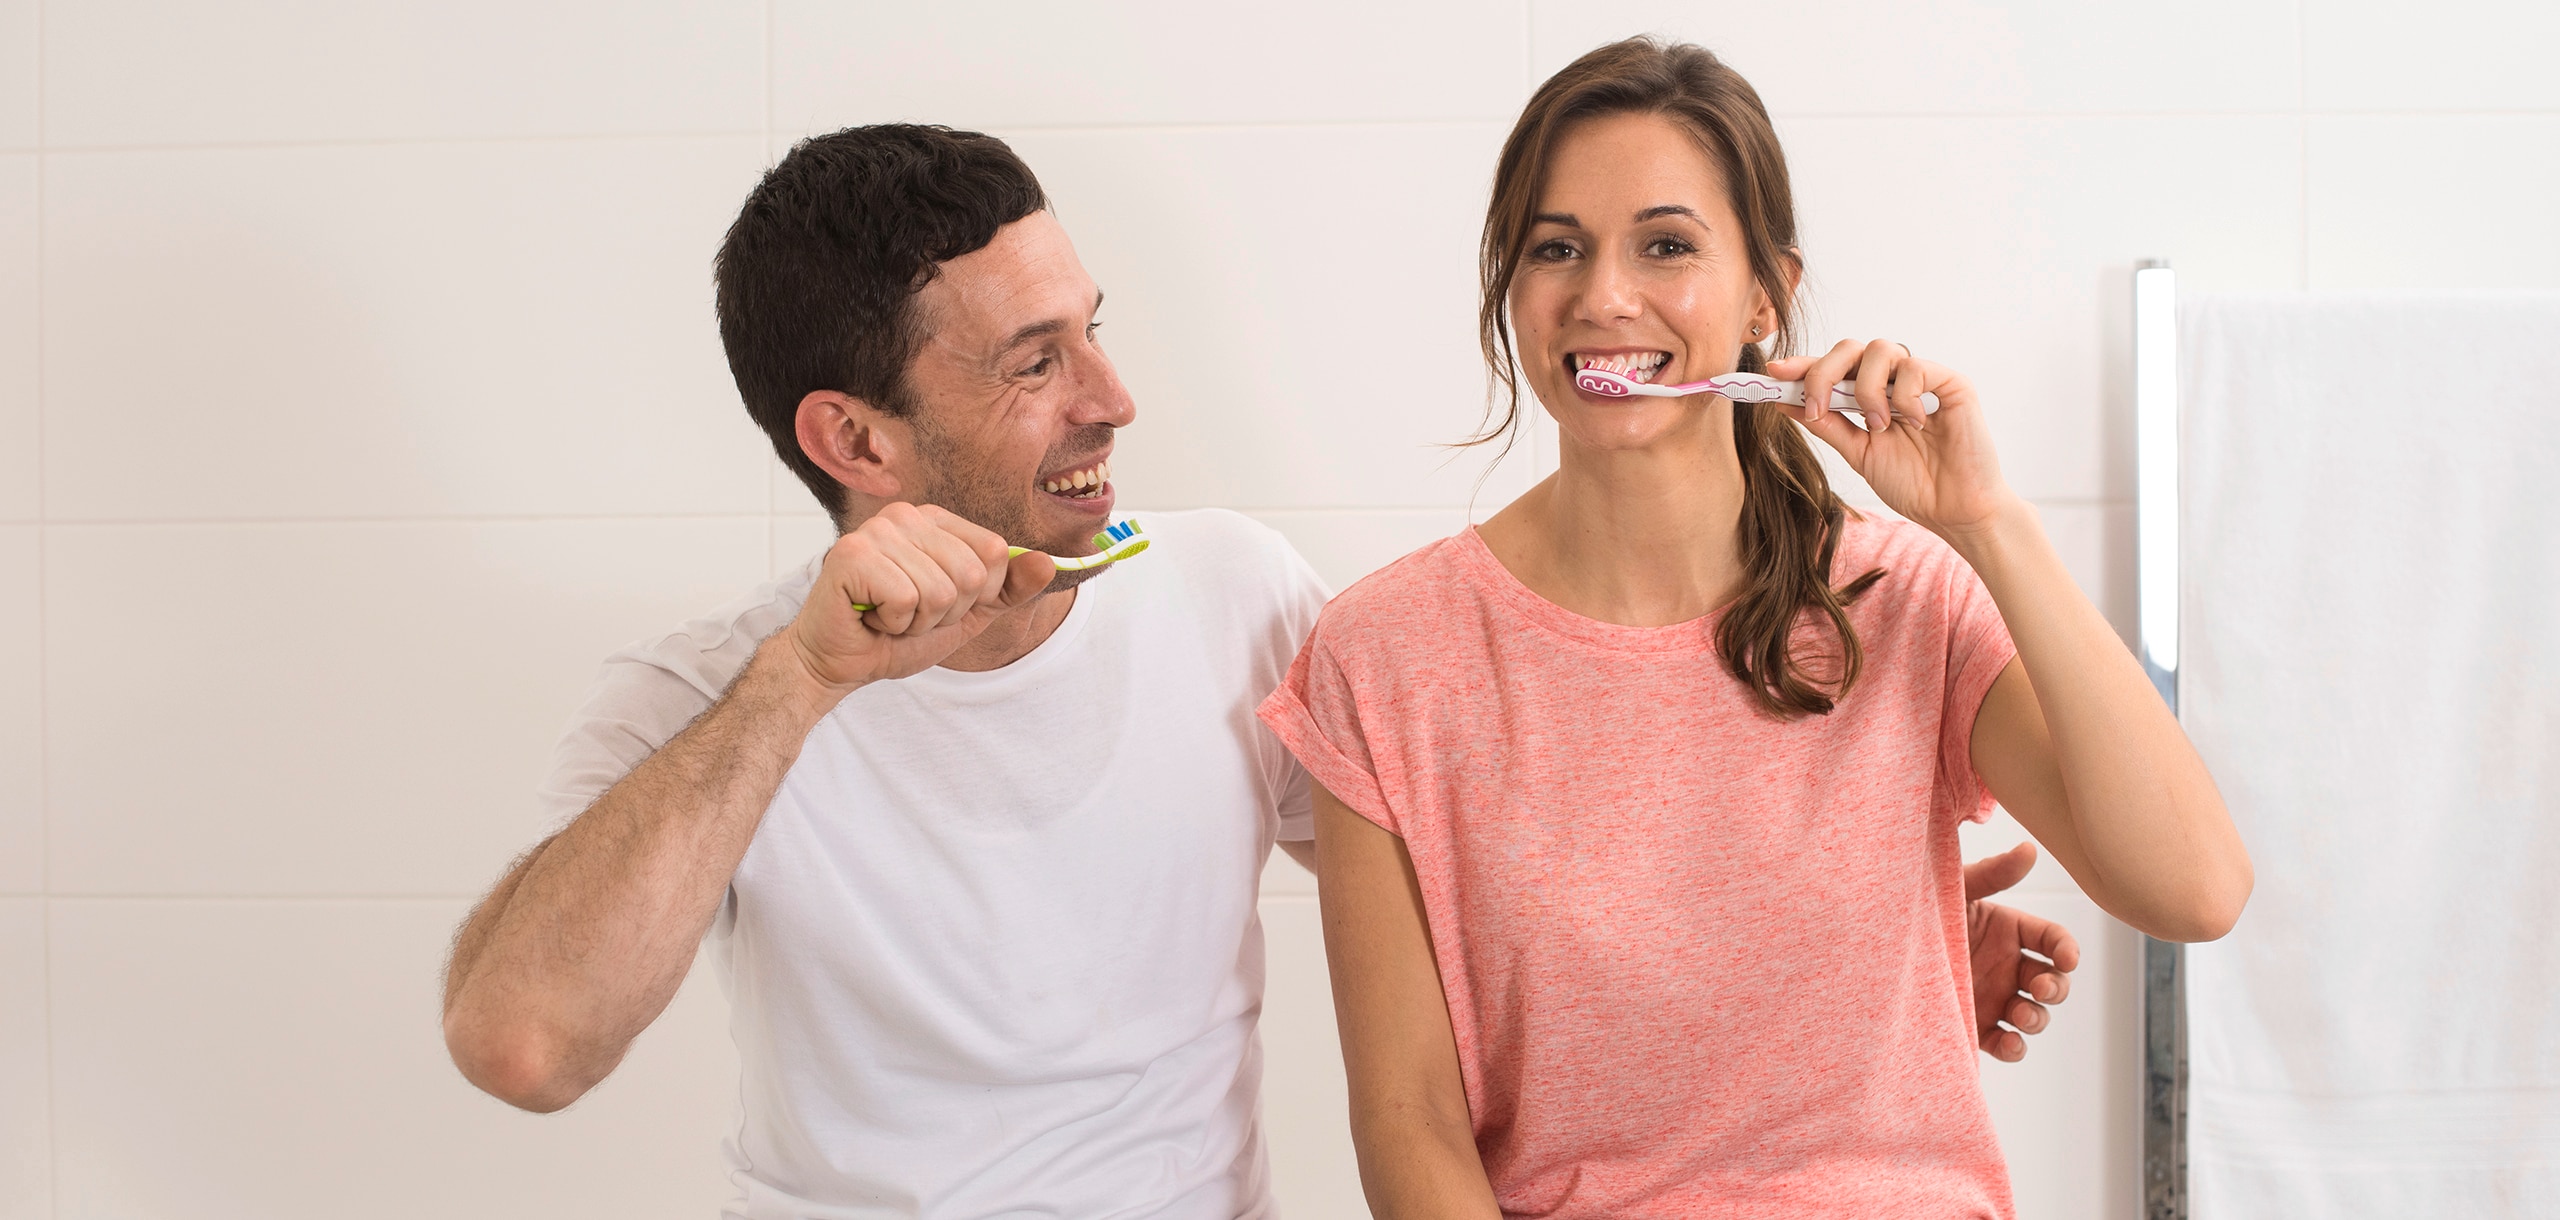 Plak en tandsteen voorkomen